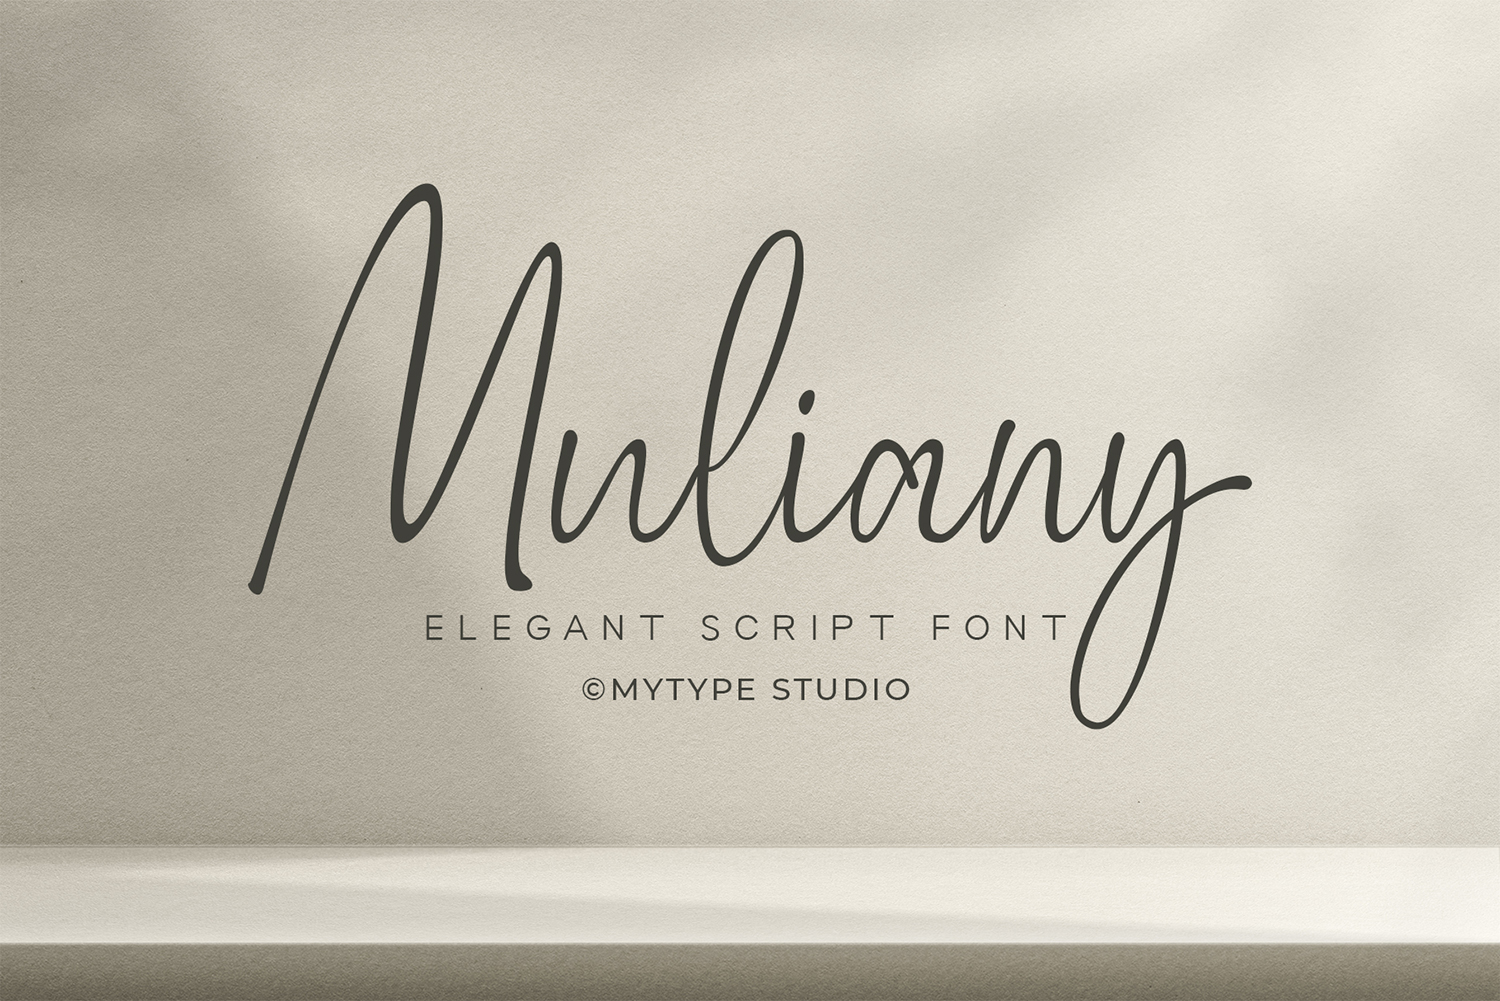 Muliany Free Font